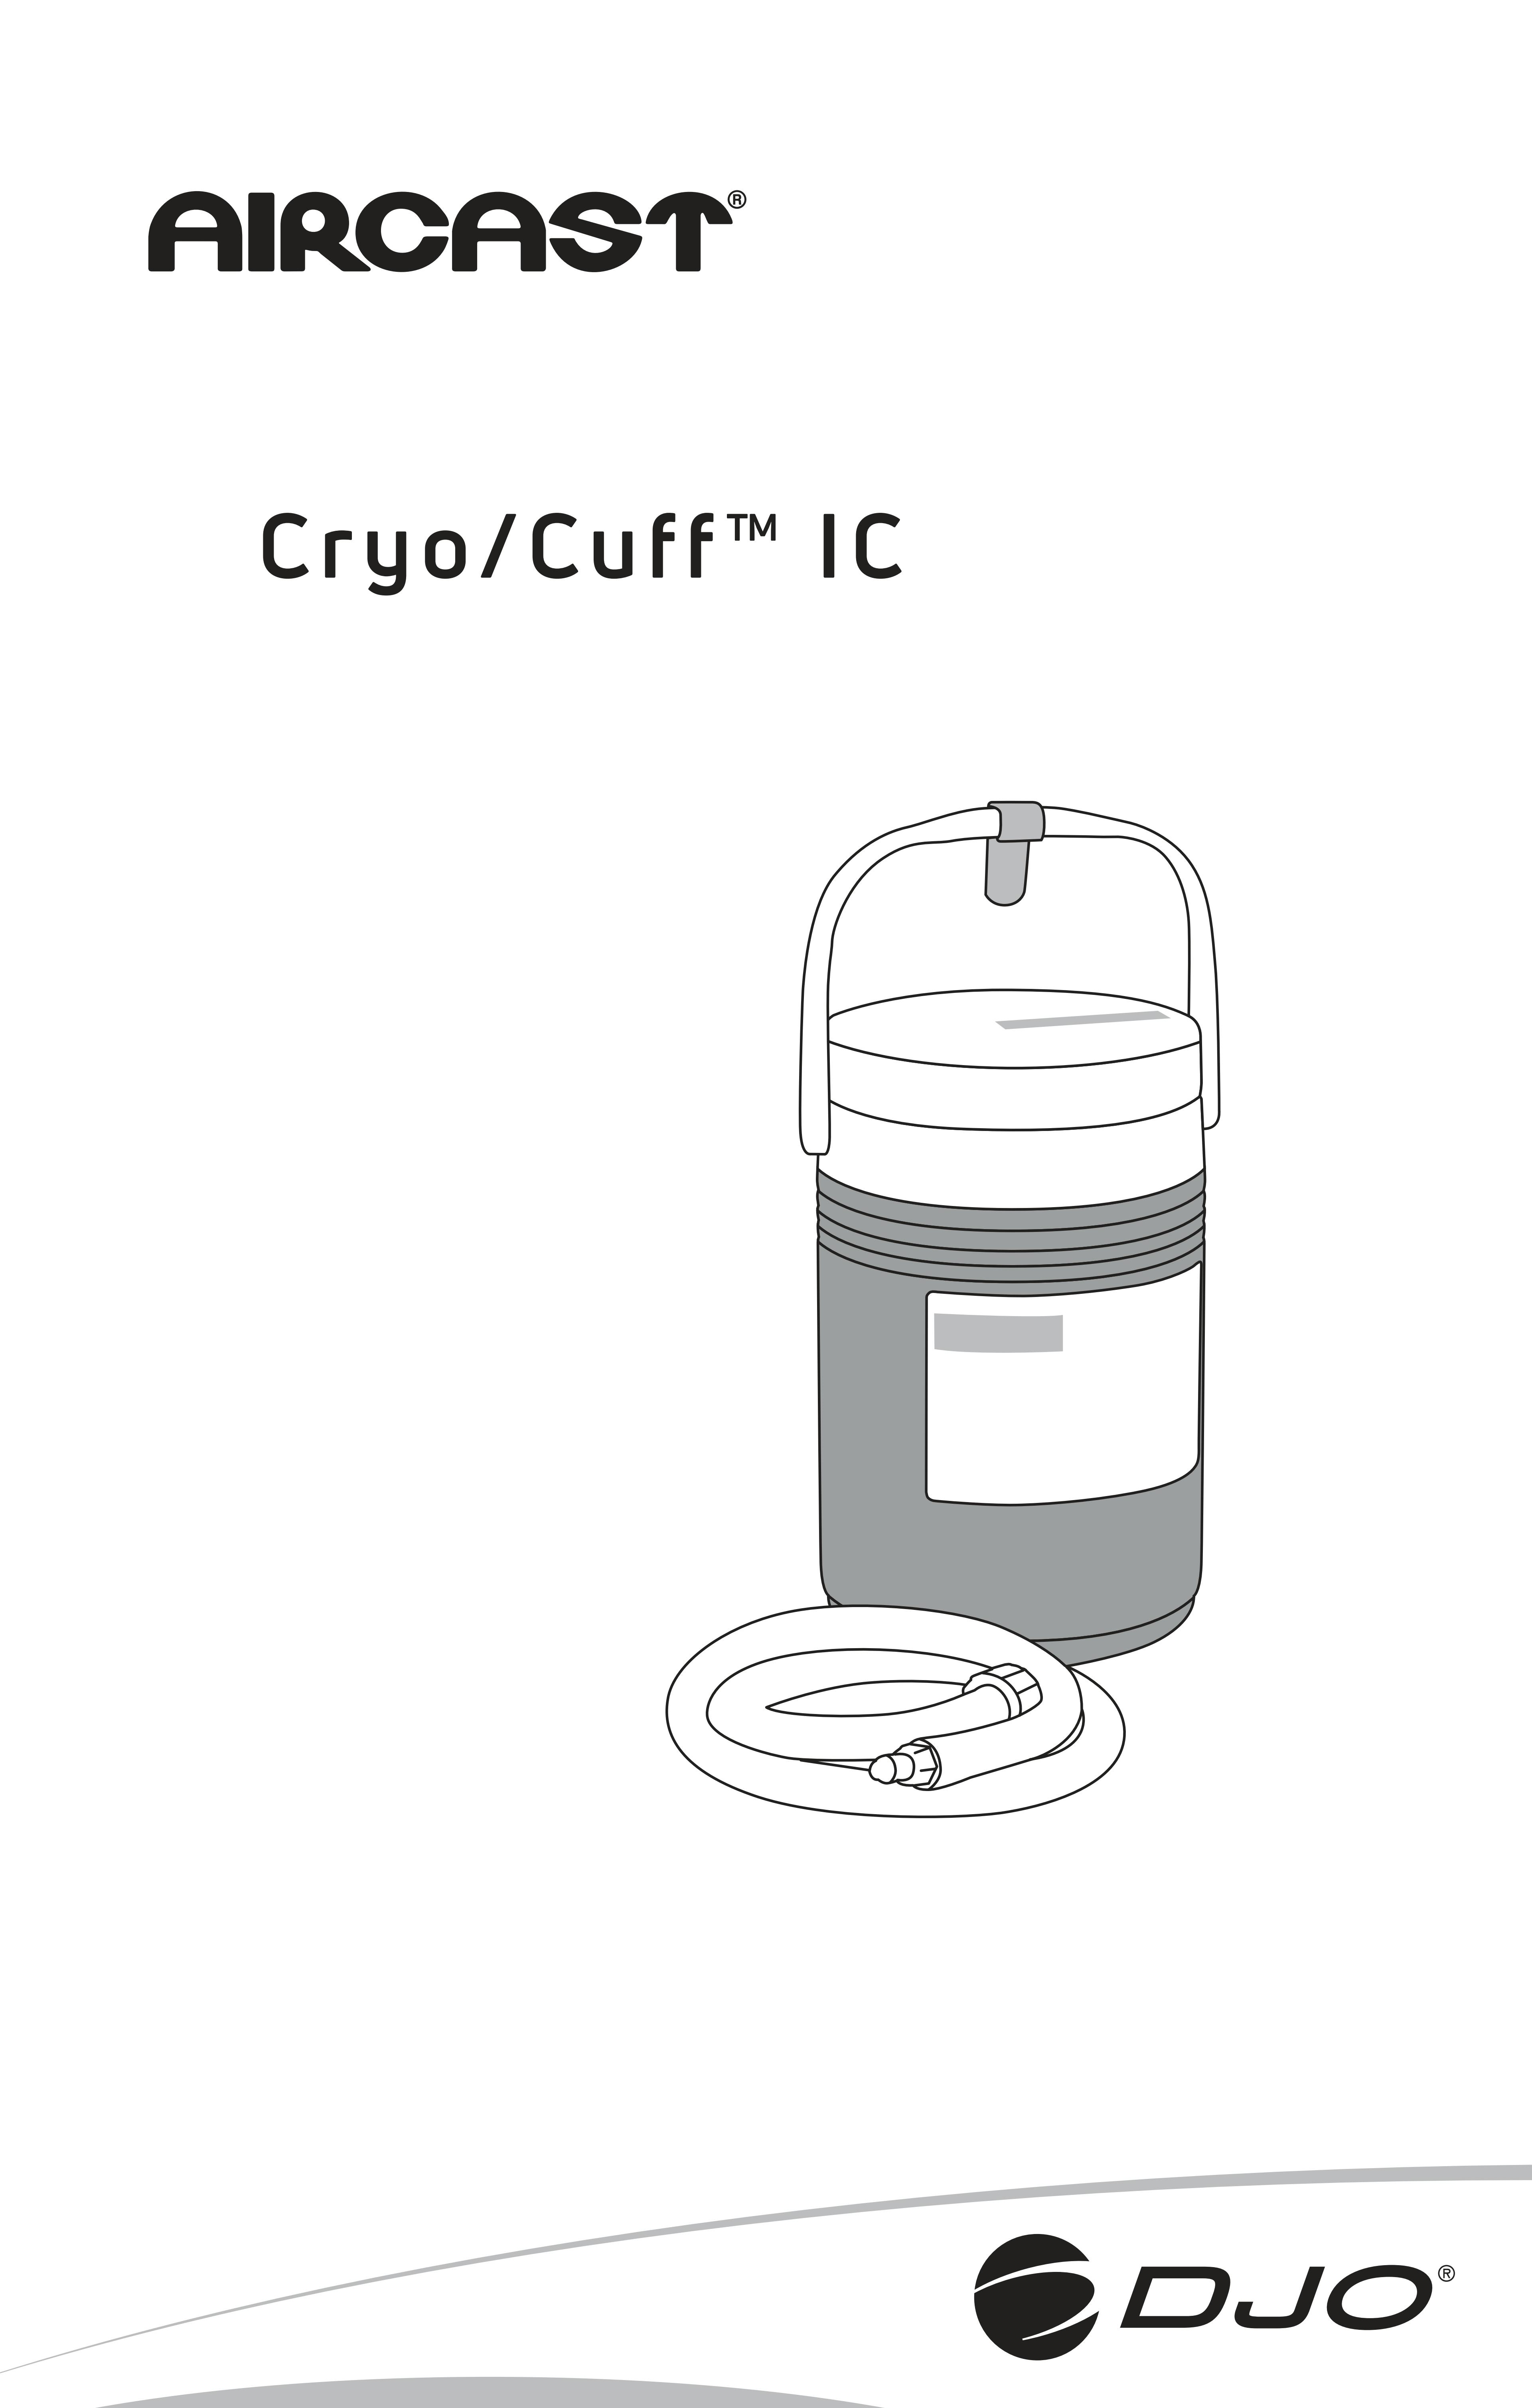 Gebrauchsanleitung-AIRCAST Cryo Cuff IC Kanne-13-5205.pdf